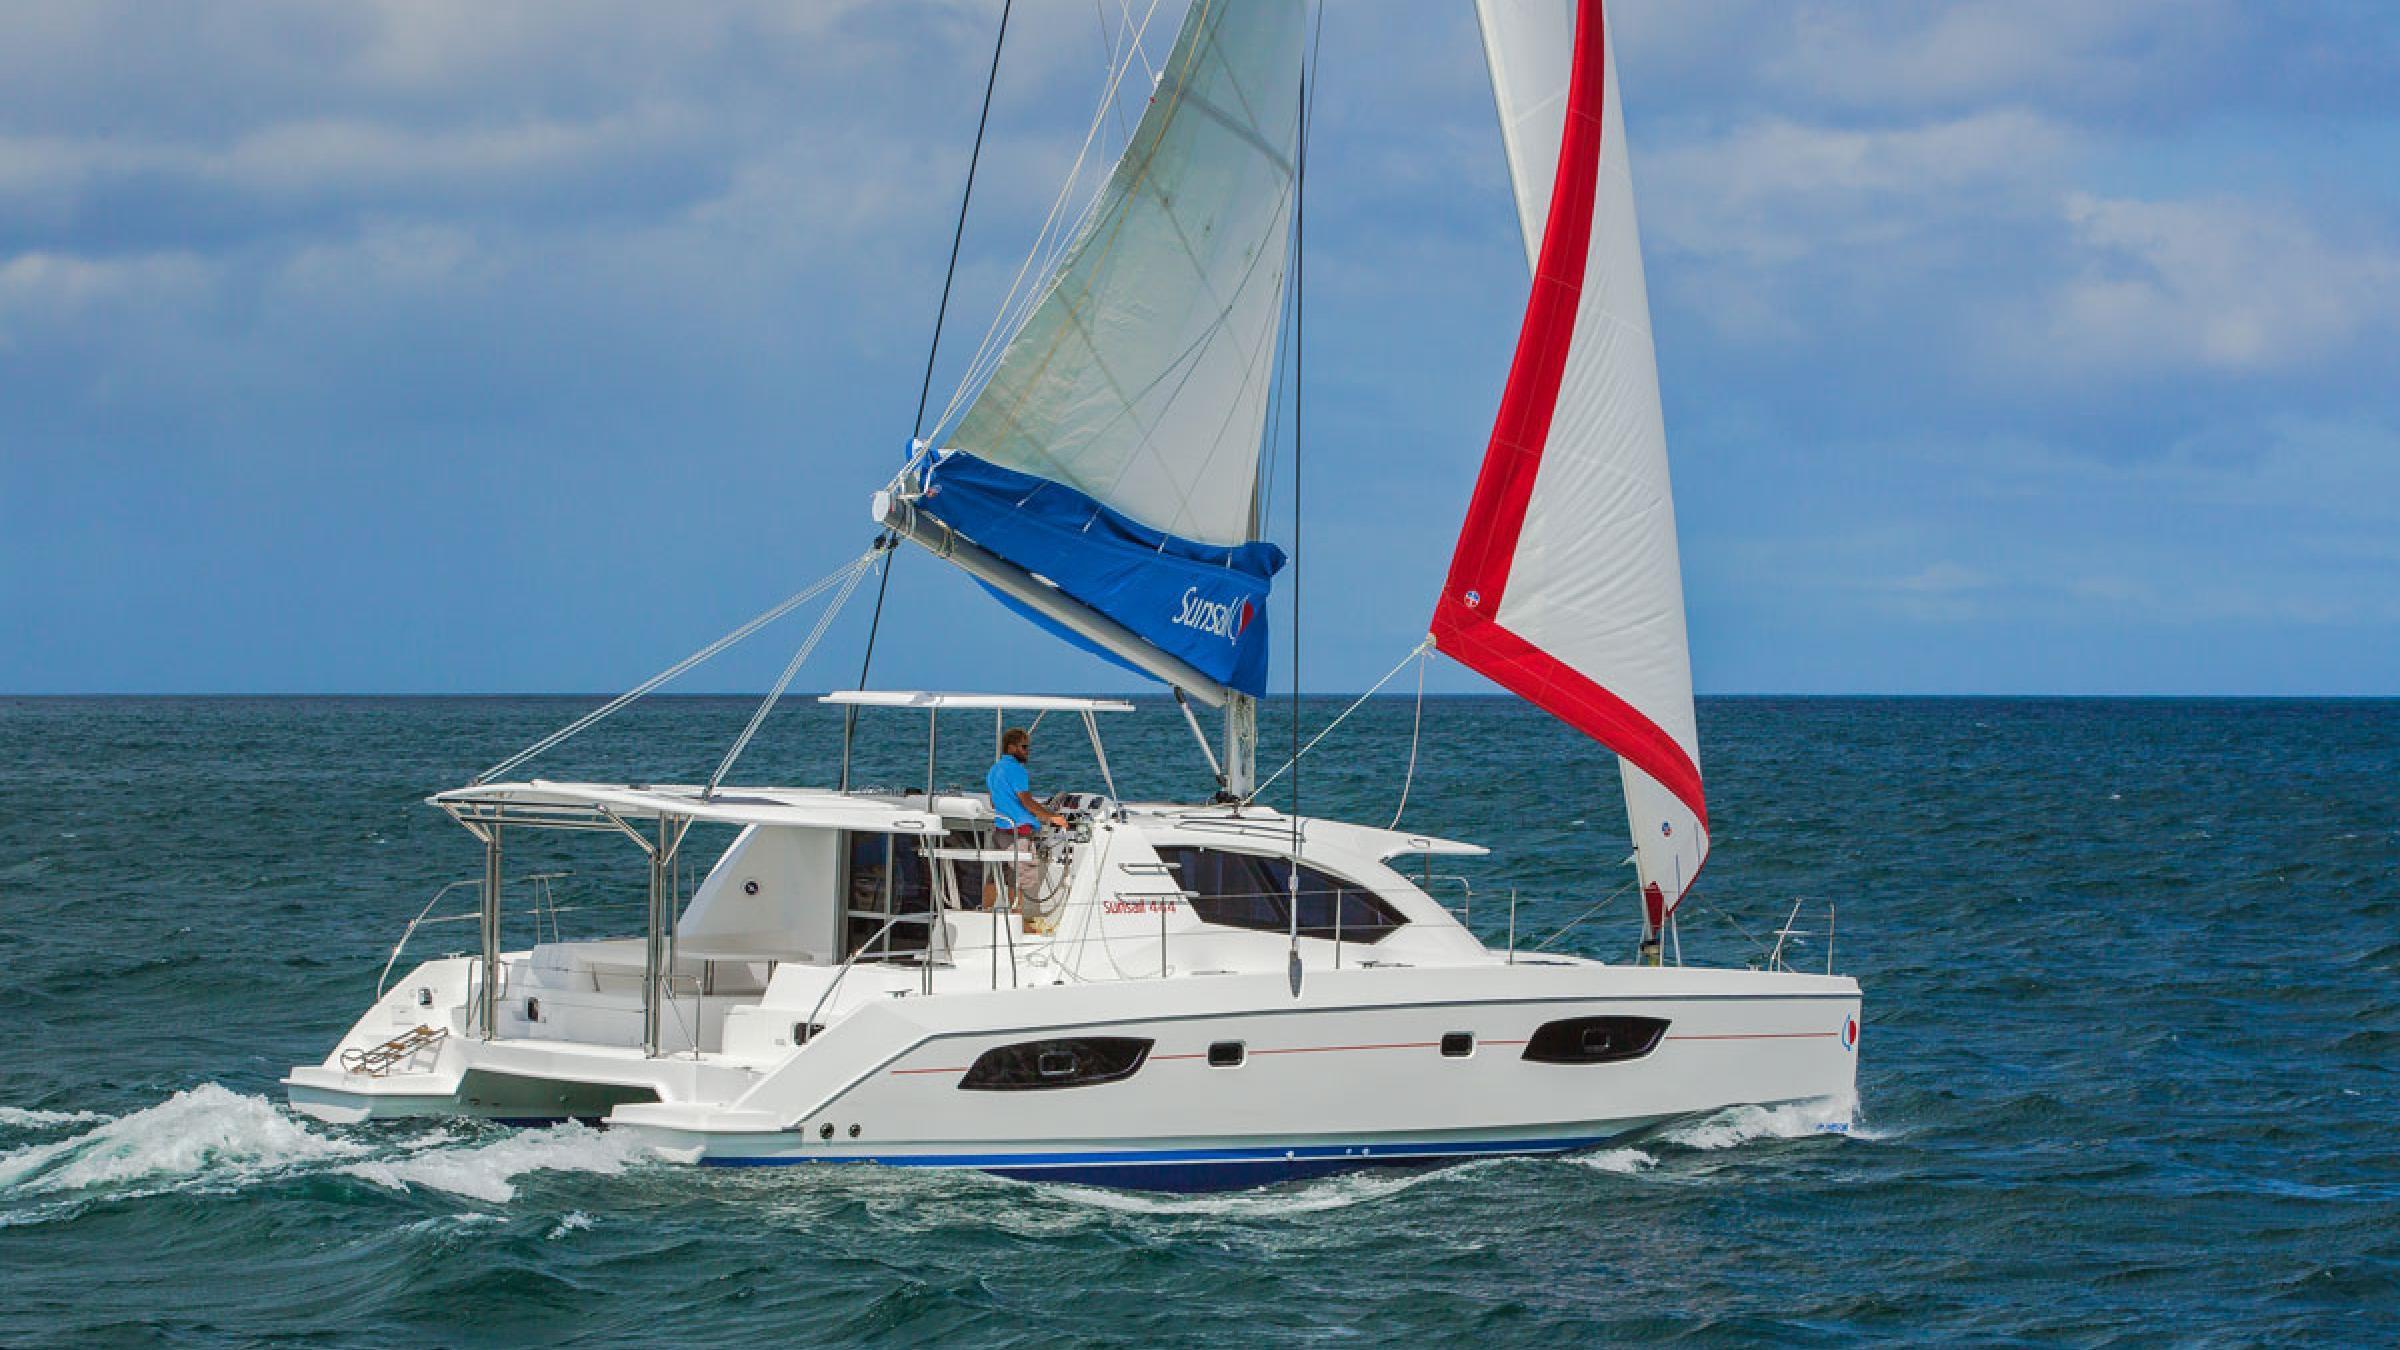 44 foot catamaran sailboat for sale